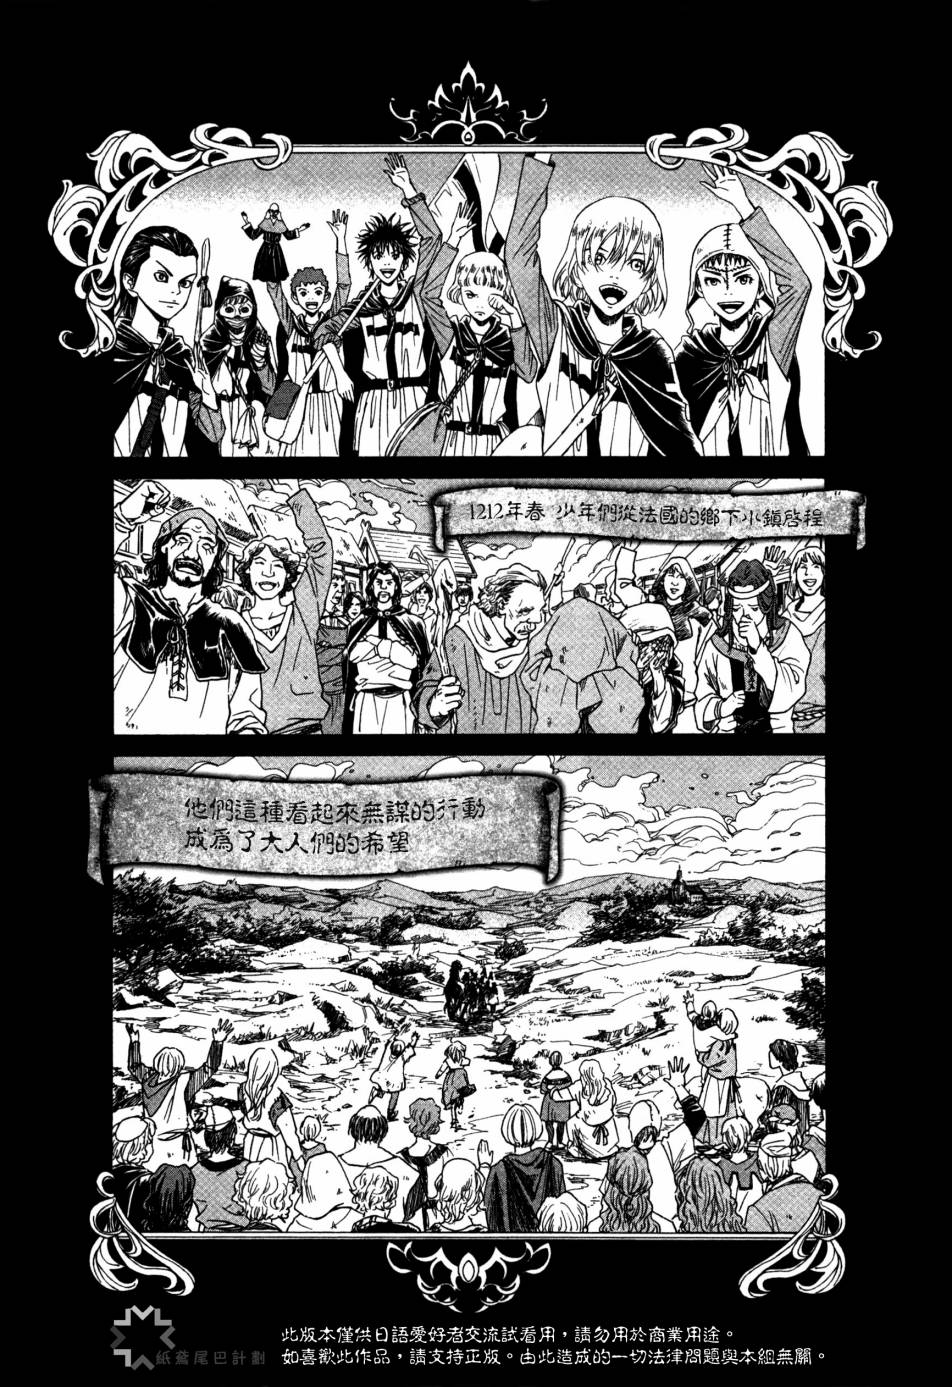 Innocents 少年十字軍【第04話】 漫畫線上看- 動漫戲說(ACGN.cc)